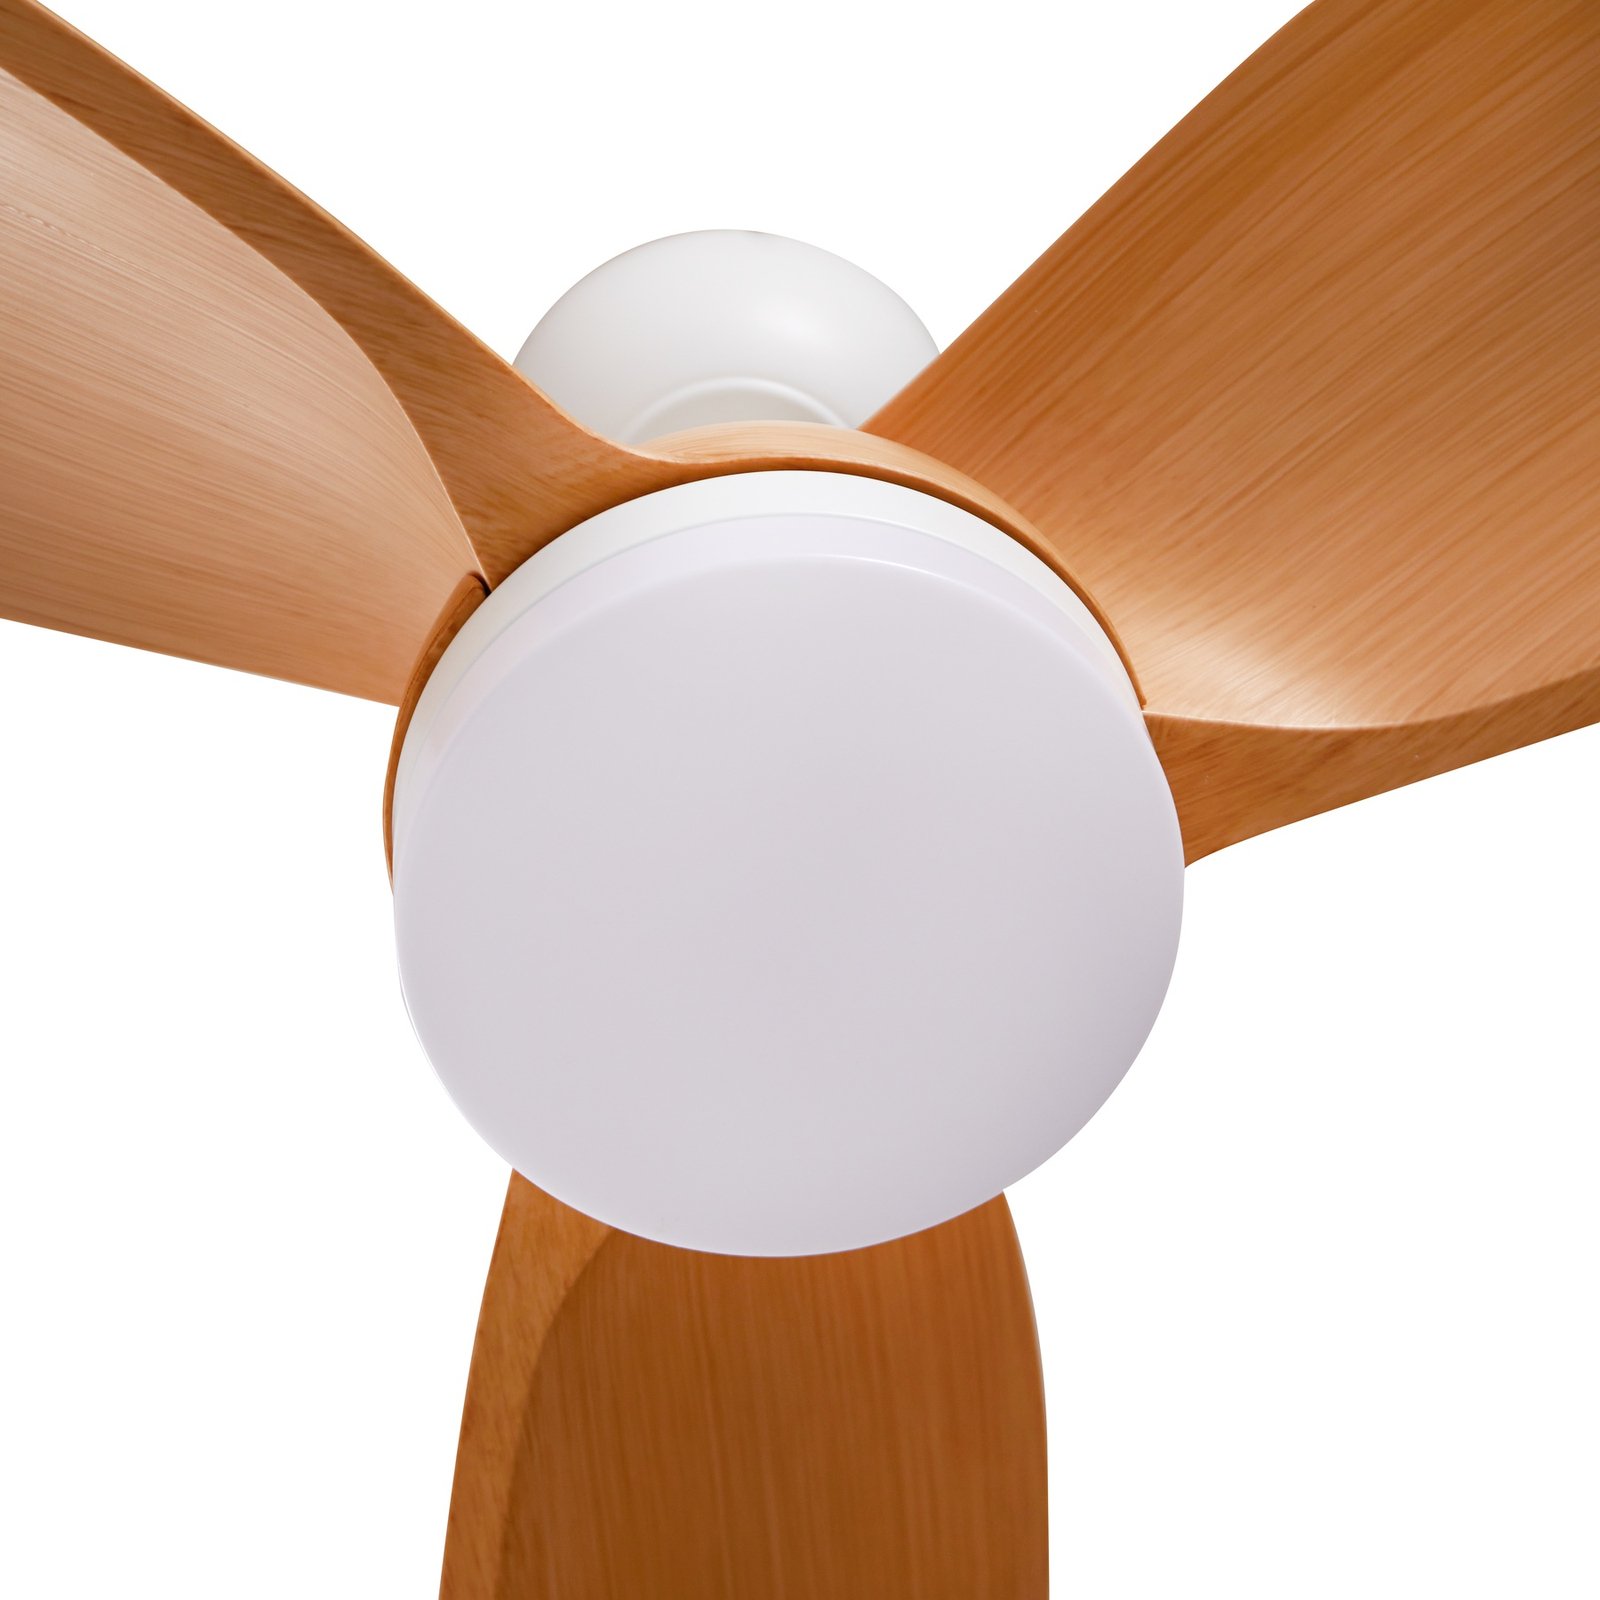 Stropni ventilator Lindby LED Enon, bela/drevesna barva, enosmerni tok,